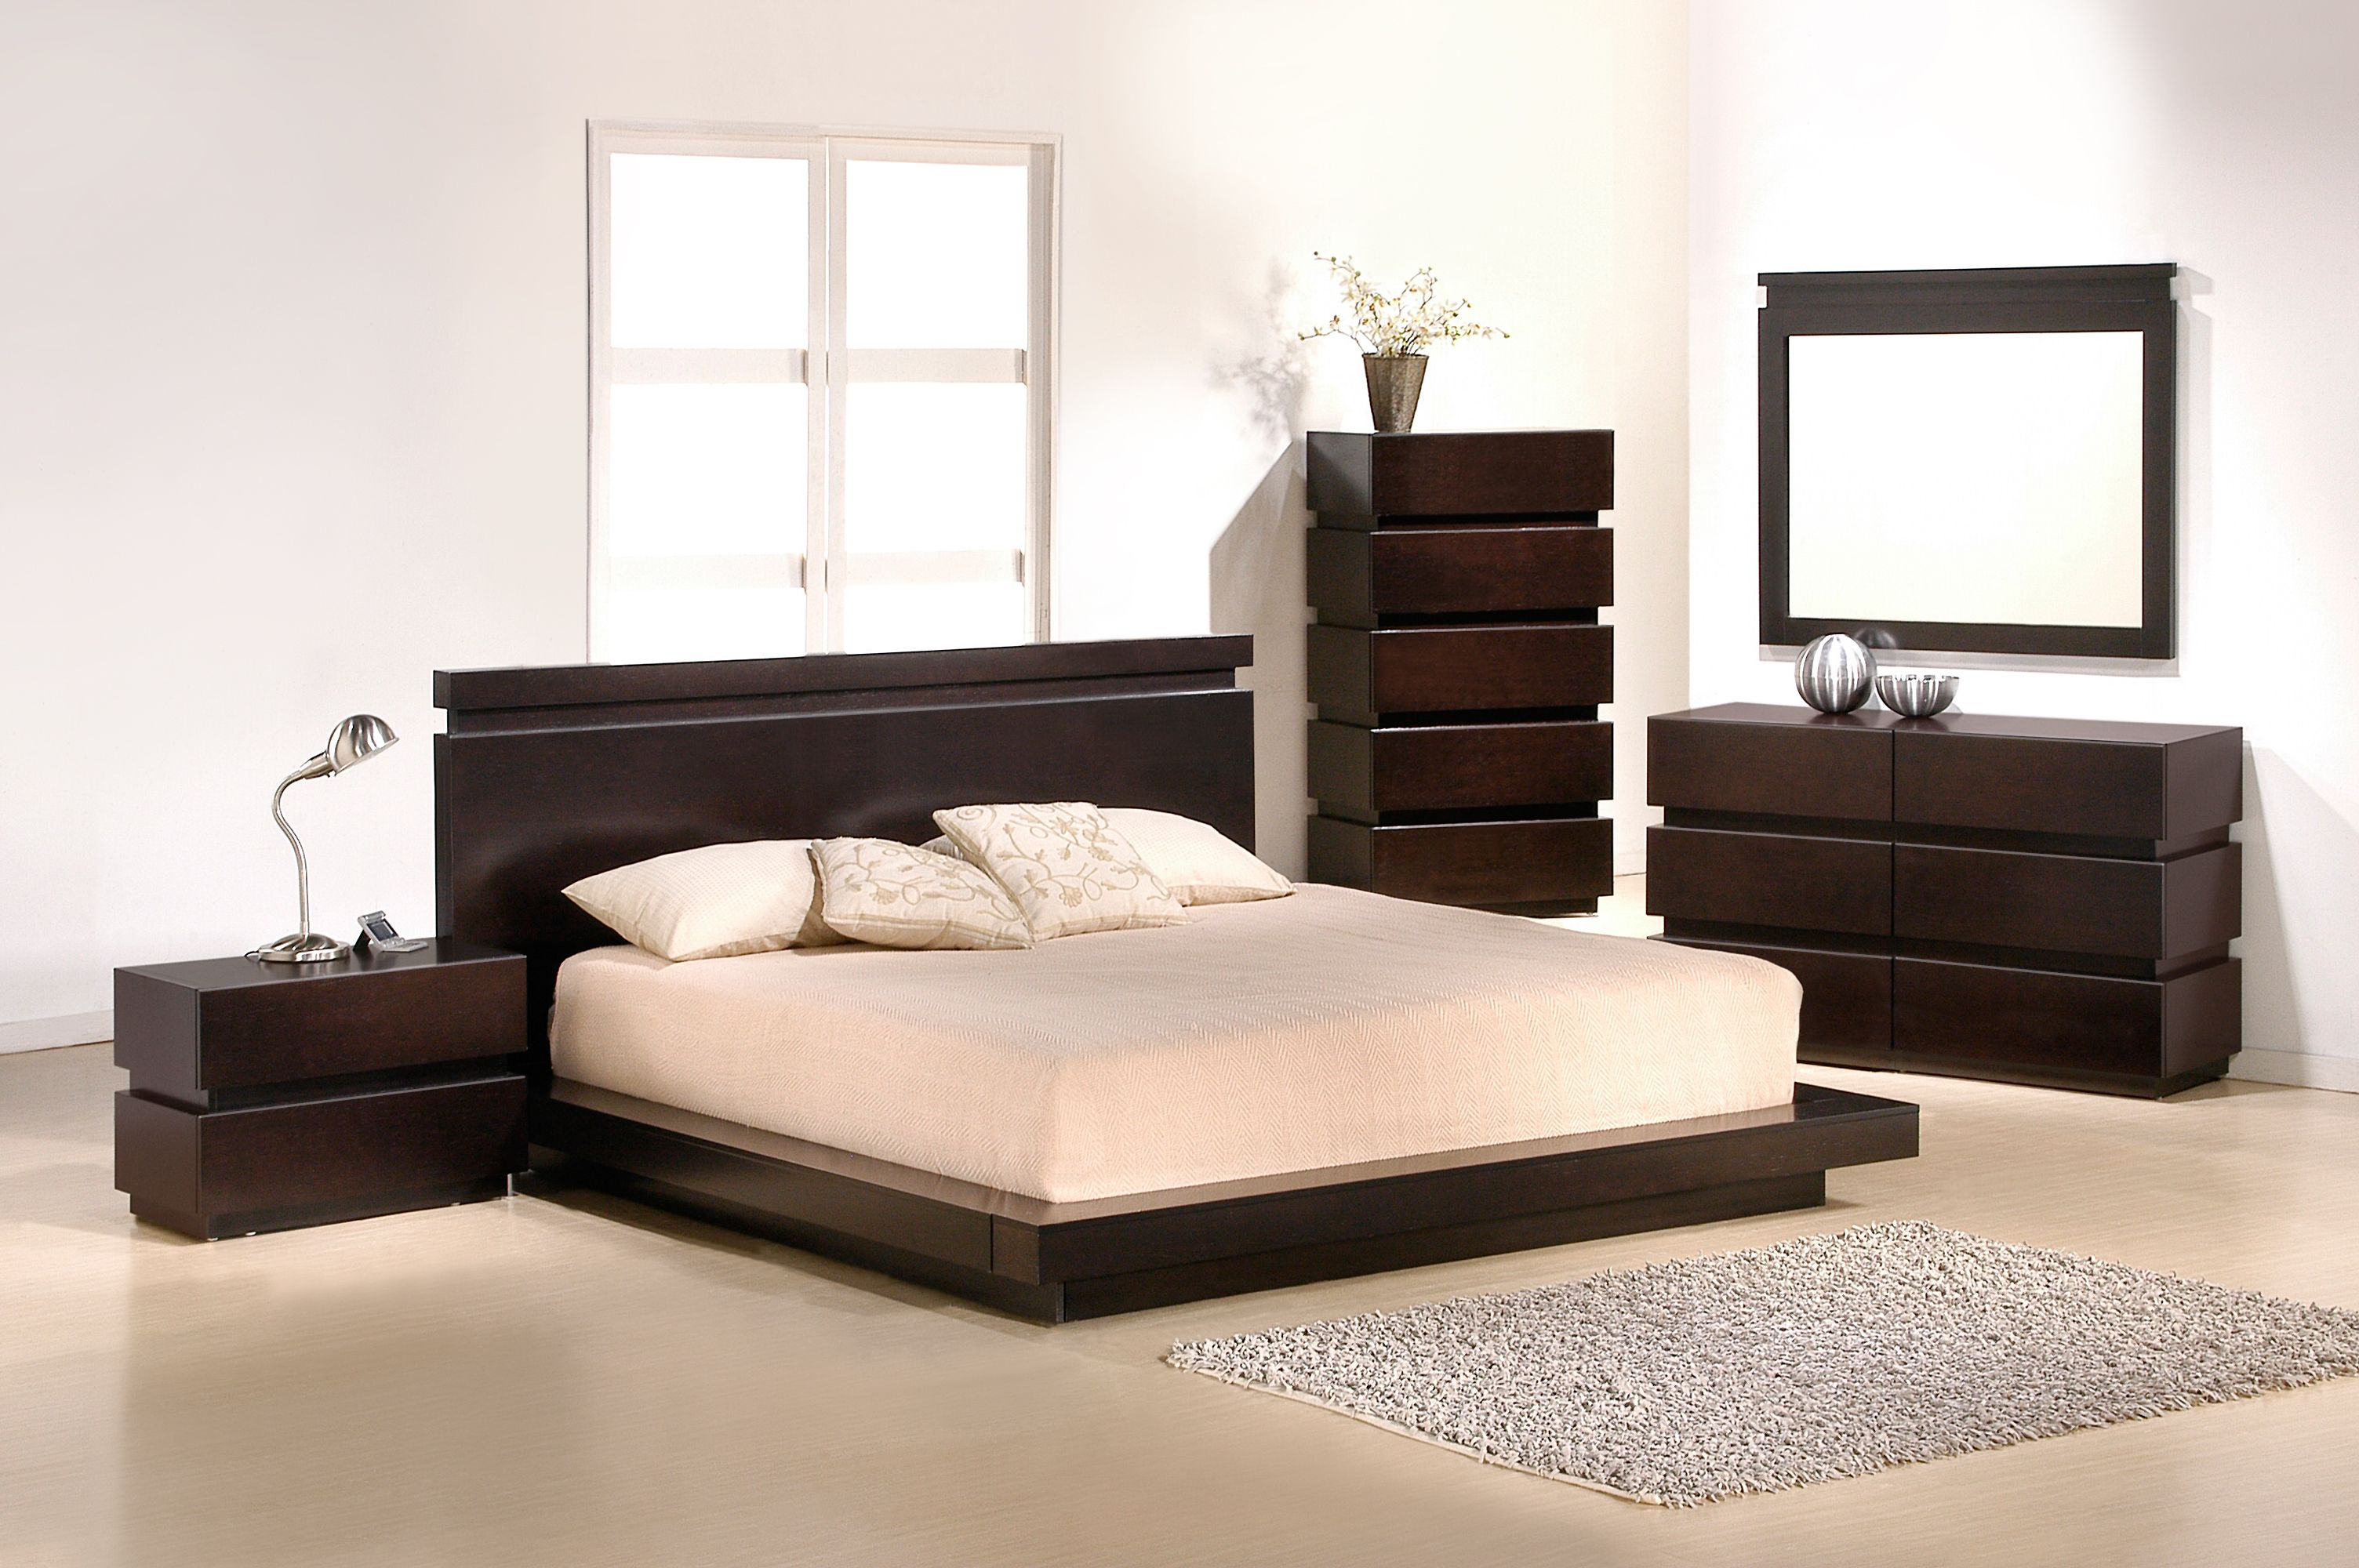 Knotch Bedroom Set Home Decor Platform Bedroom Modern Bedroom throughout sizing 3008 X 2000